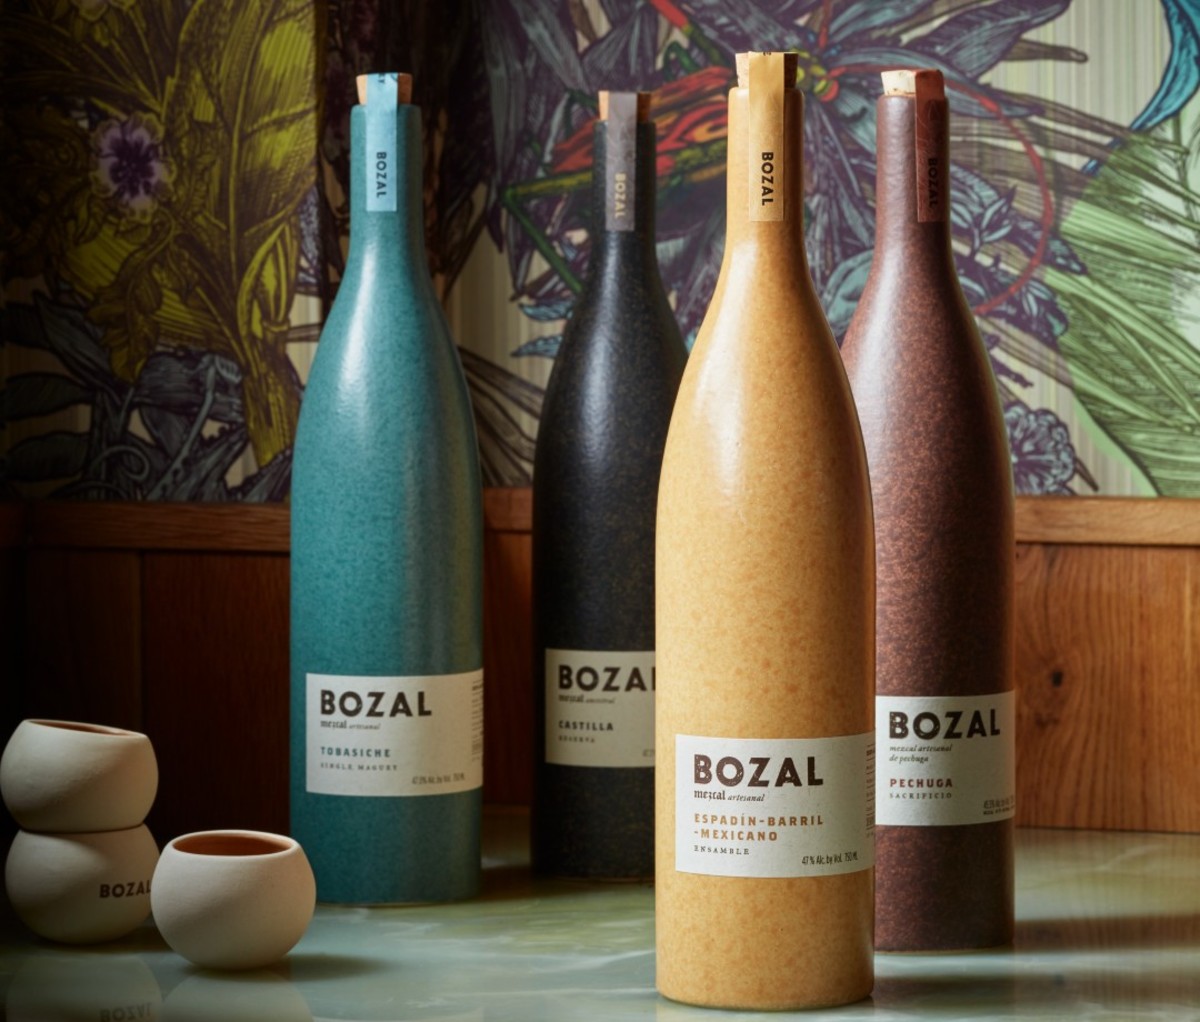 Colorful ceramic bottles of Bozal mezcal